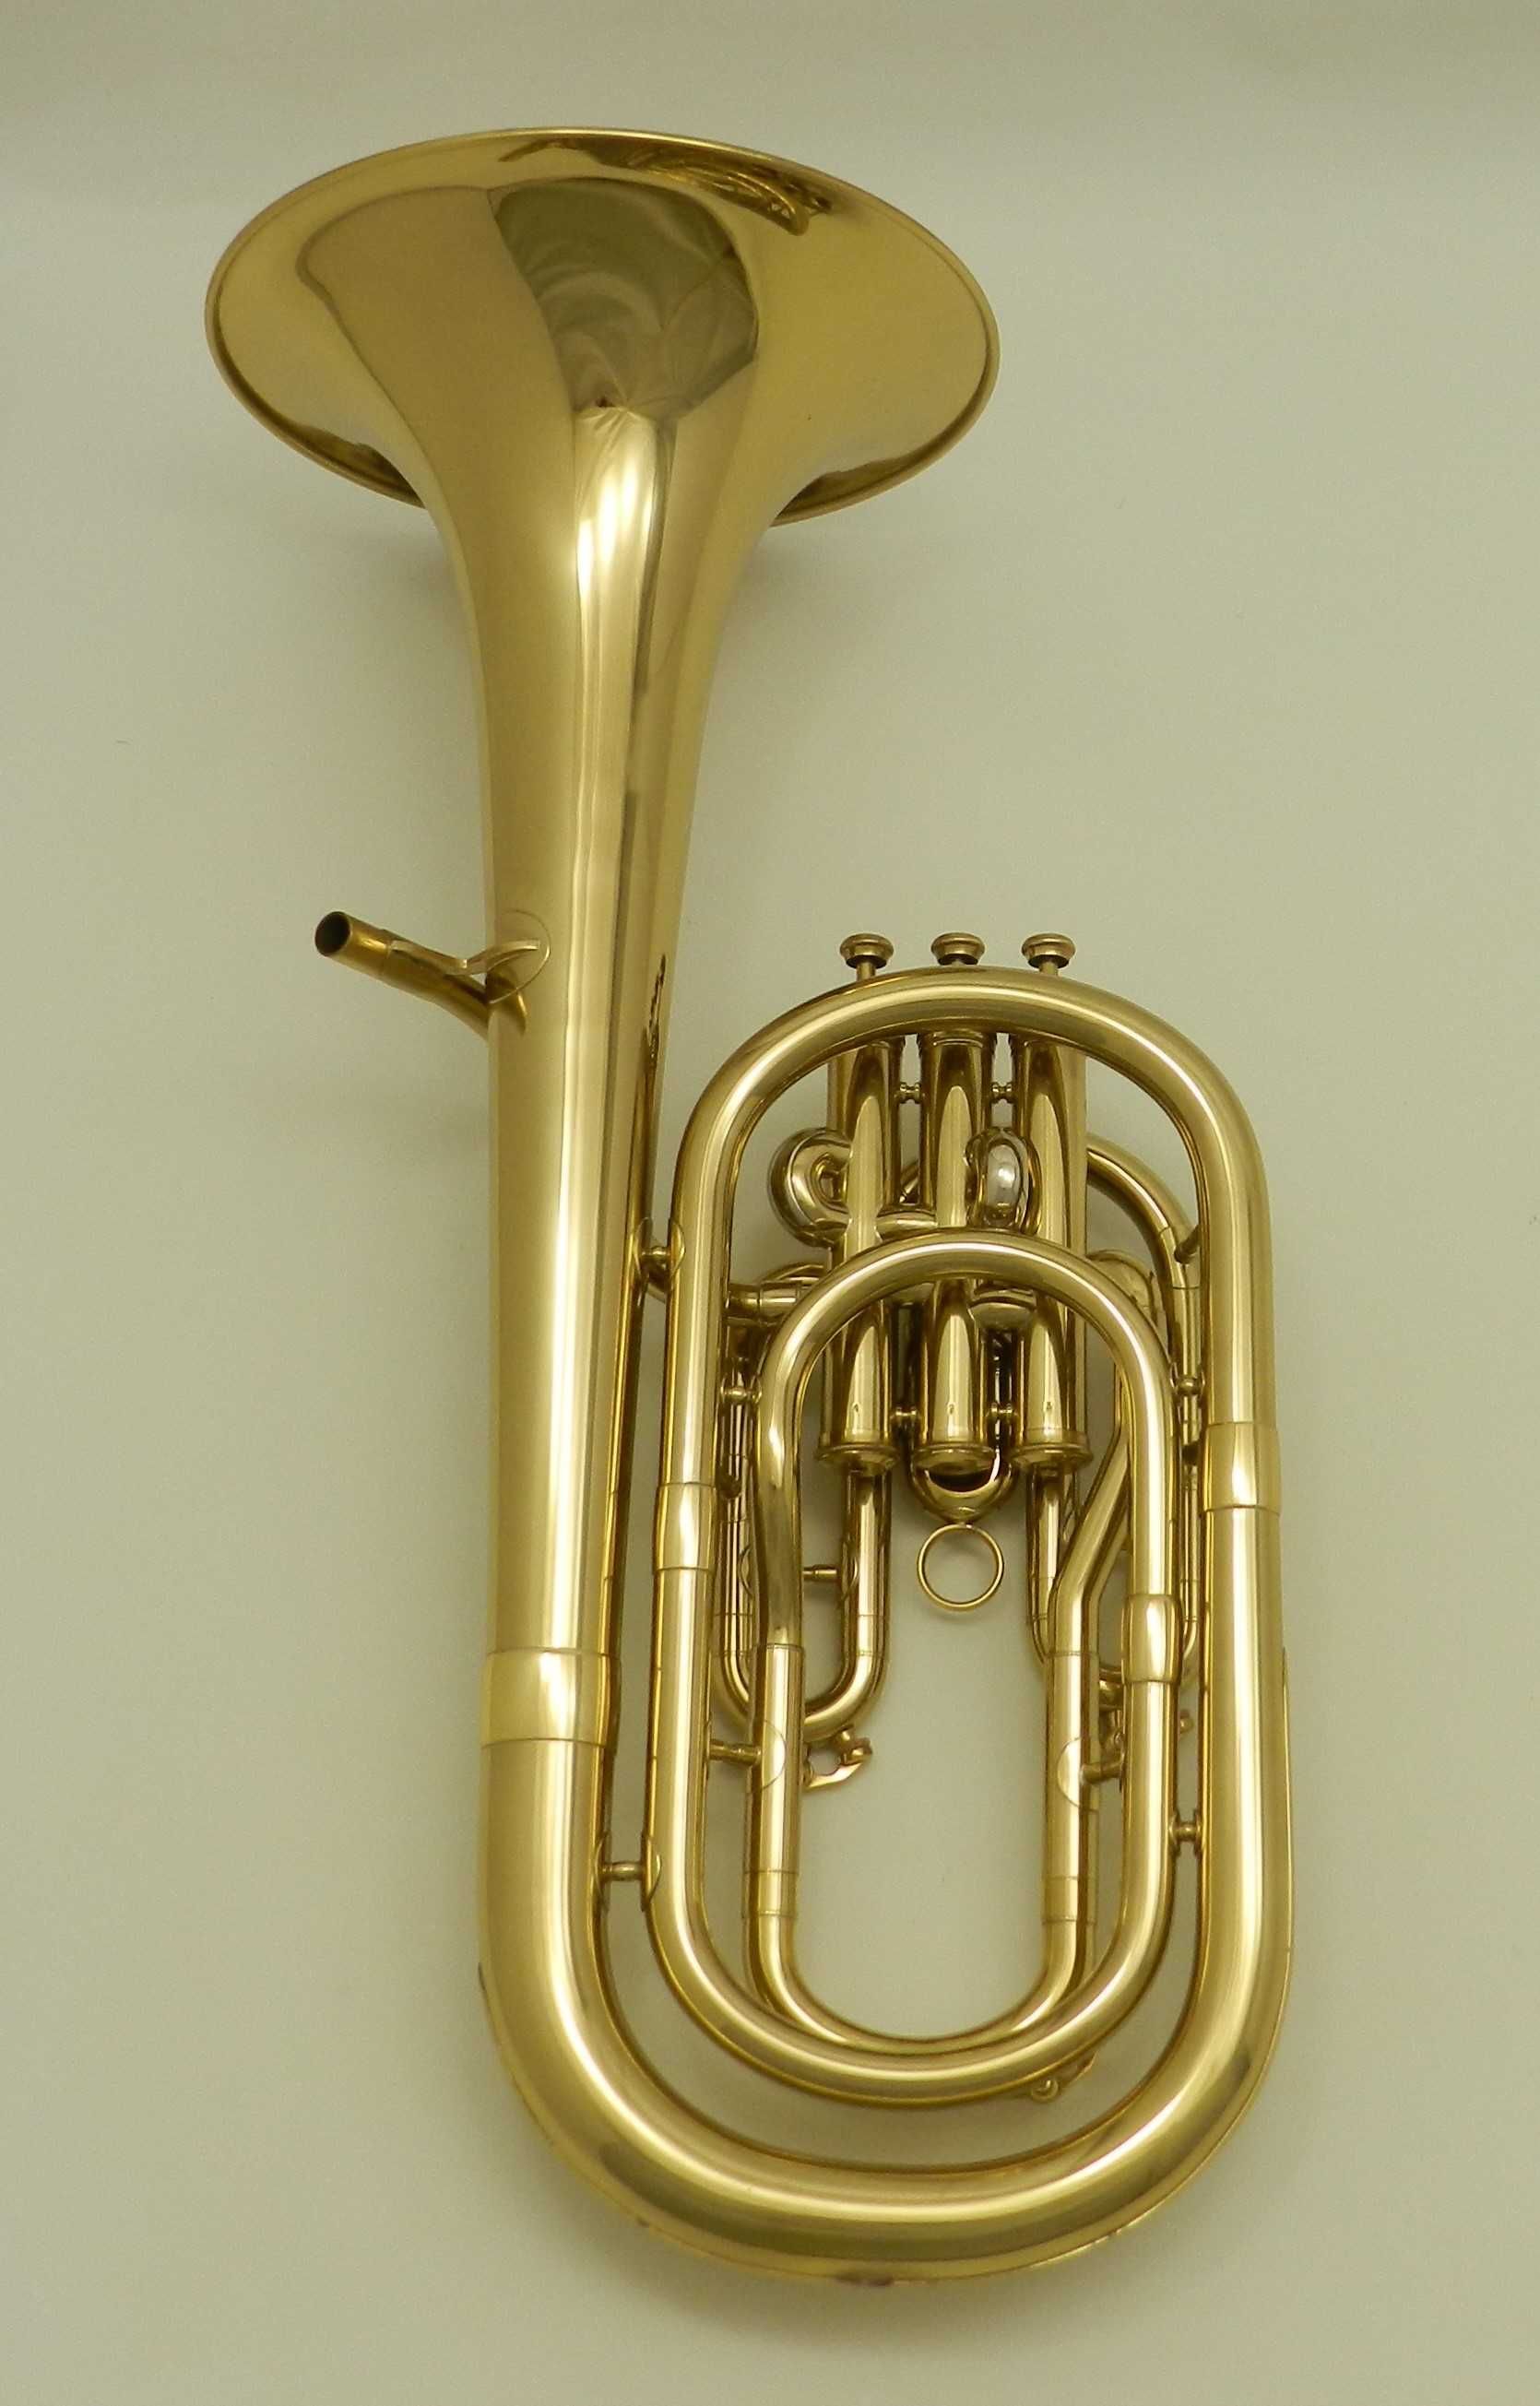 Sakshorn barytonowy Antoine Courtois model 169 DR24-018